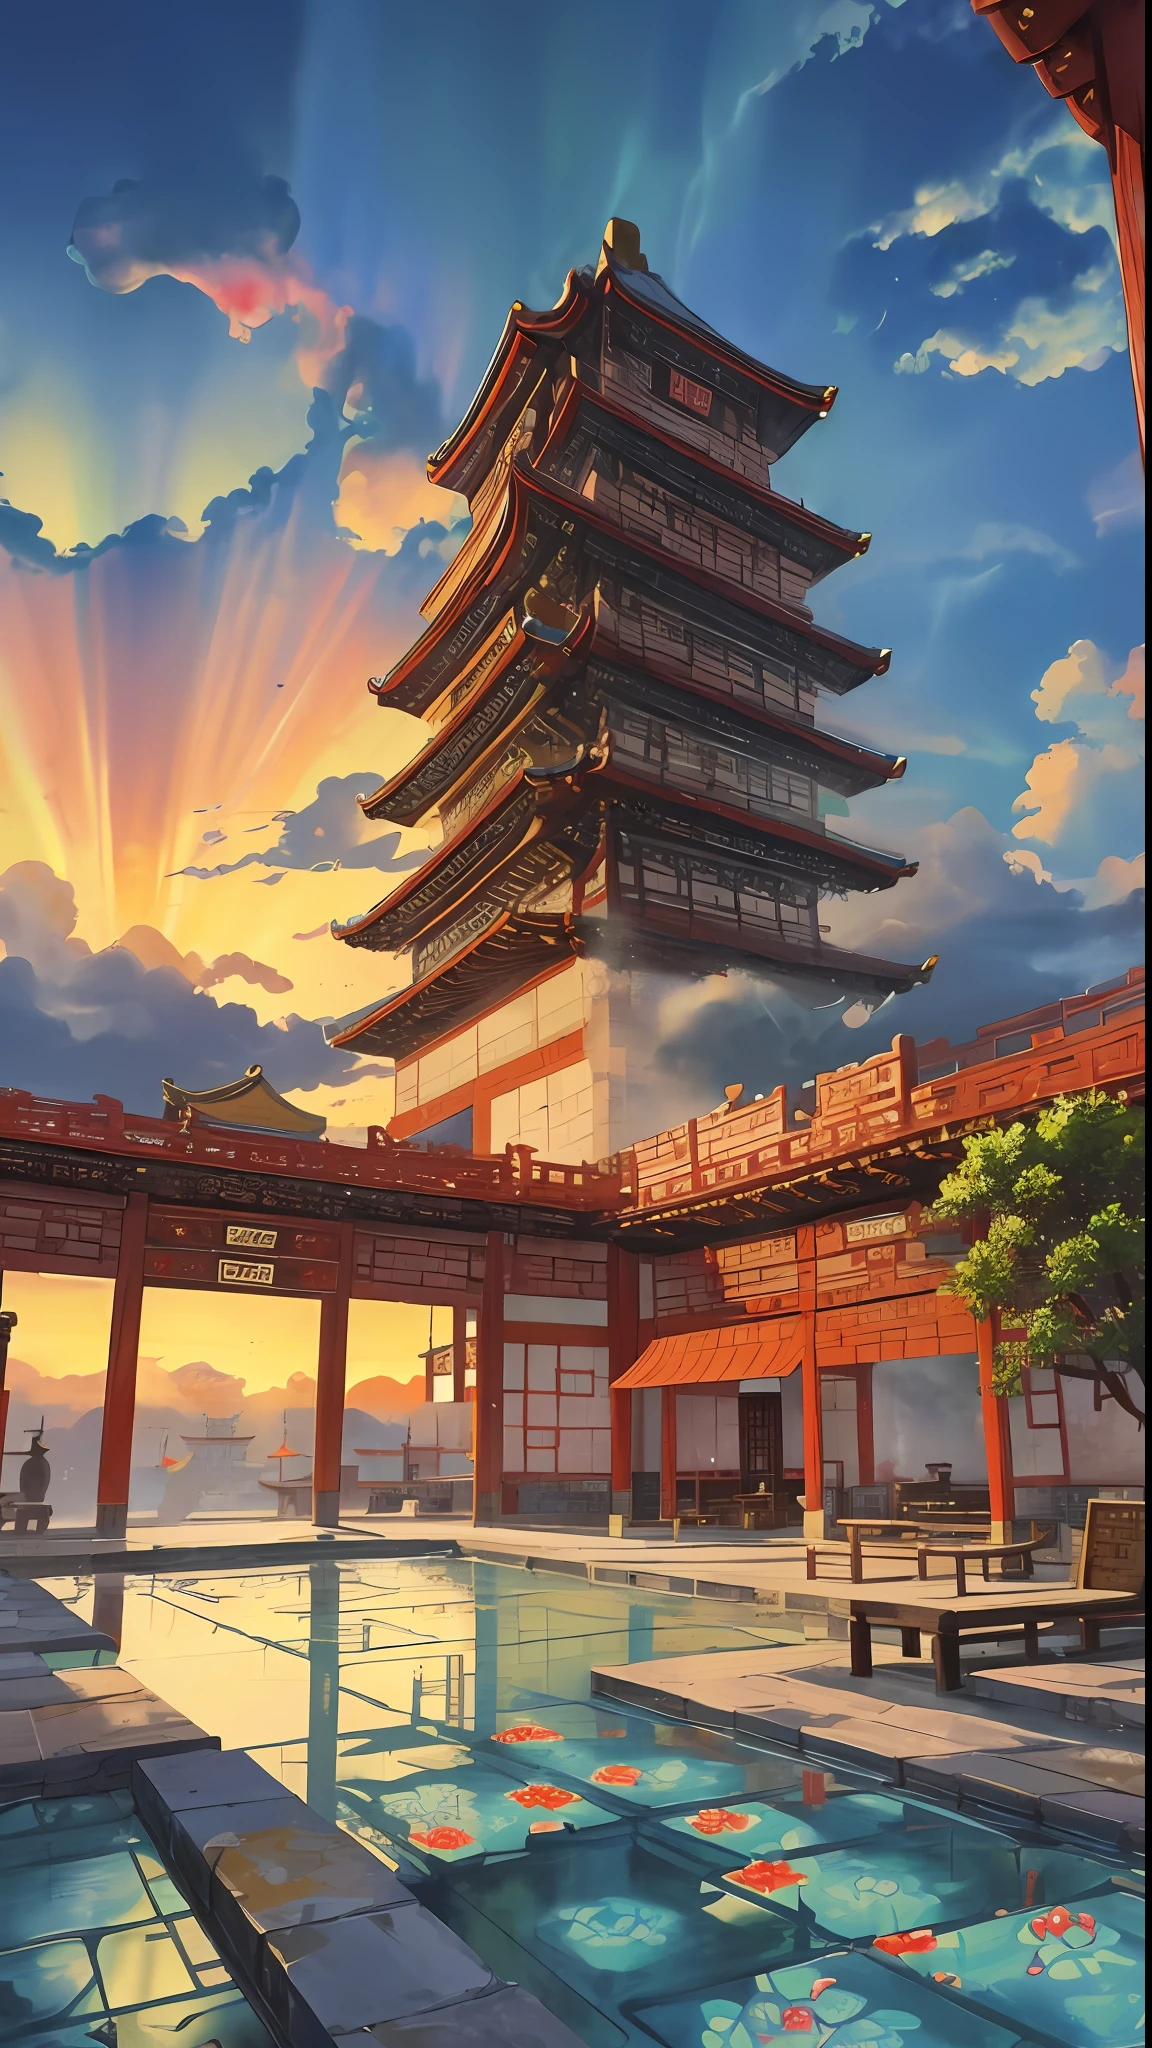 A cena do jogo, o antigo palácio chinês está localizado acima das nuvens, cercado por nuvens e névoa, majestoso, Telhas de vidro, raios de luz coloridos, ((color tinta)),((splash tinta)),((splash tinta) tinta}) ), Obra de arte, alta qualidade, Gráficos refinados, Alto detalhe